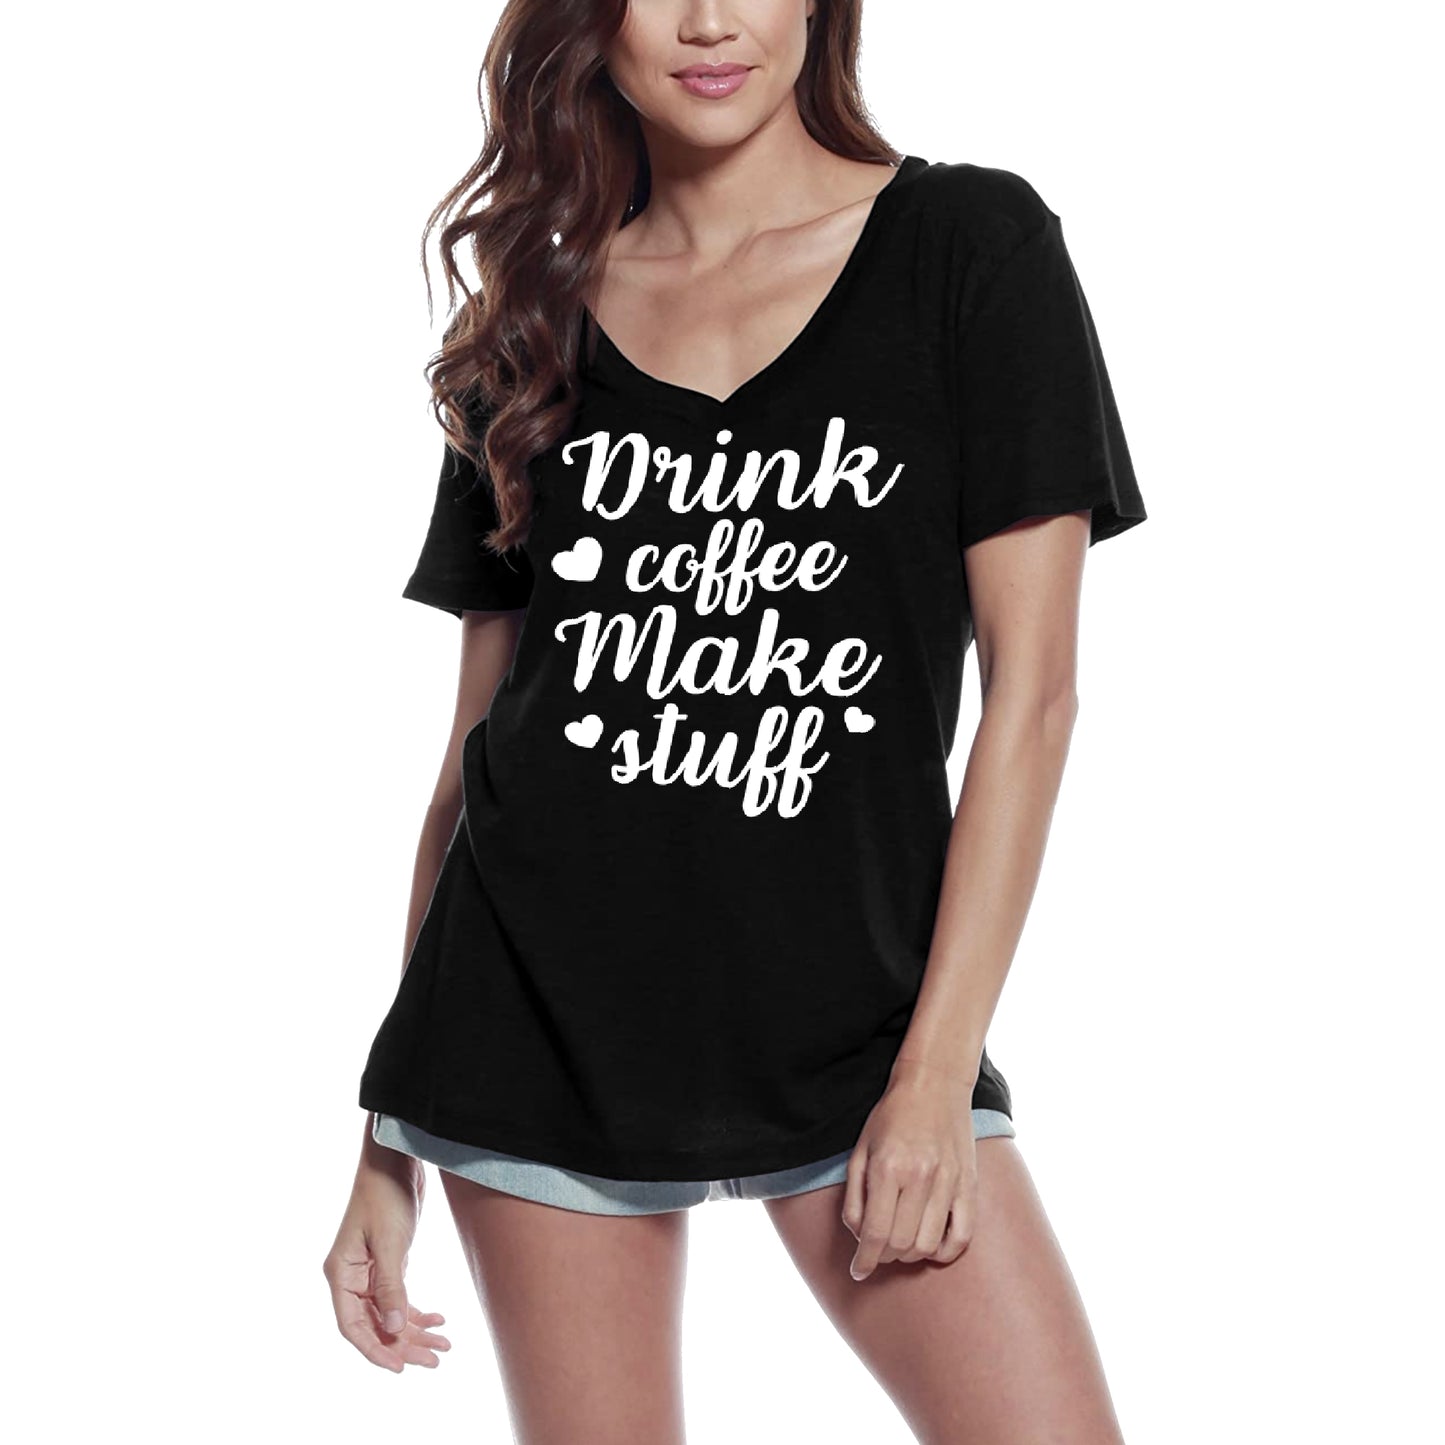 ULTRABASIC Women's T-Shirt Drink Coffee Make Stuff - Short Sleeve Tee Shirt Tops